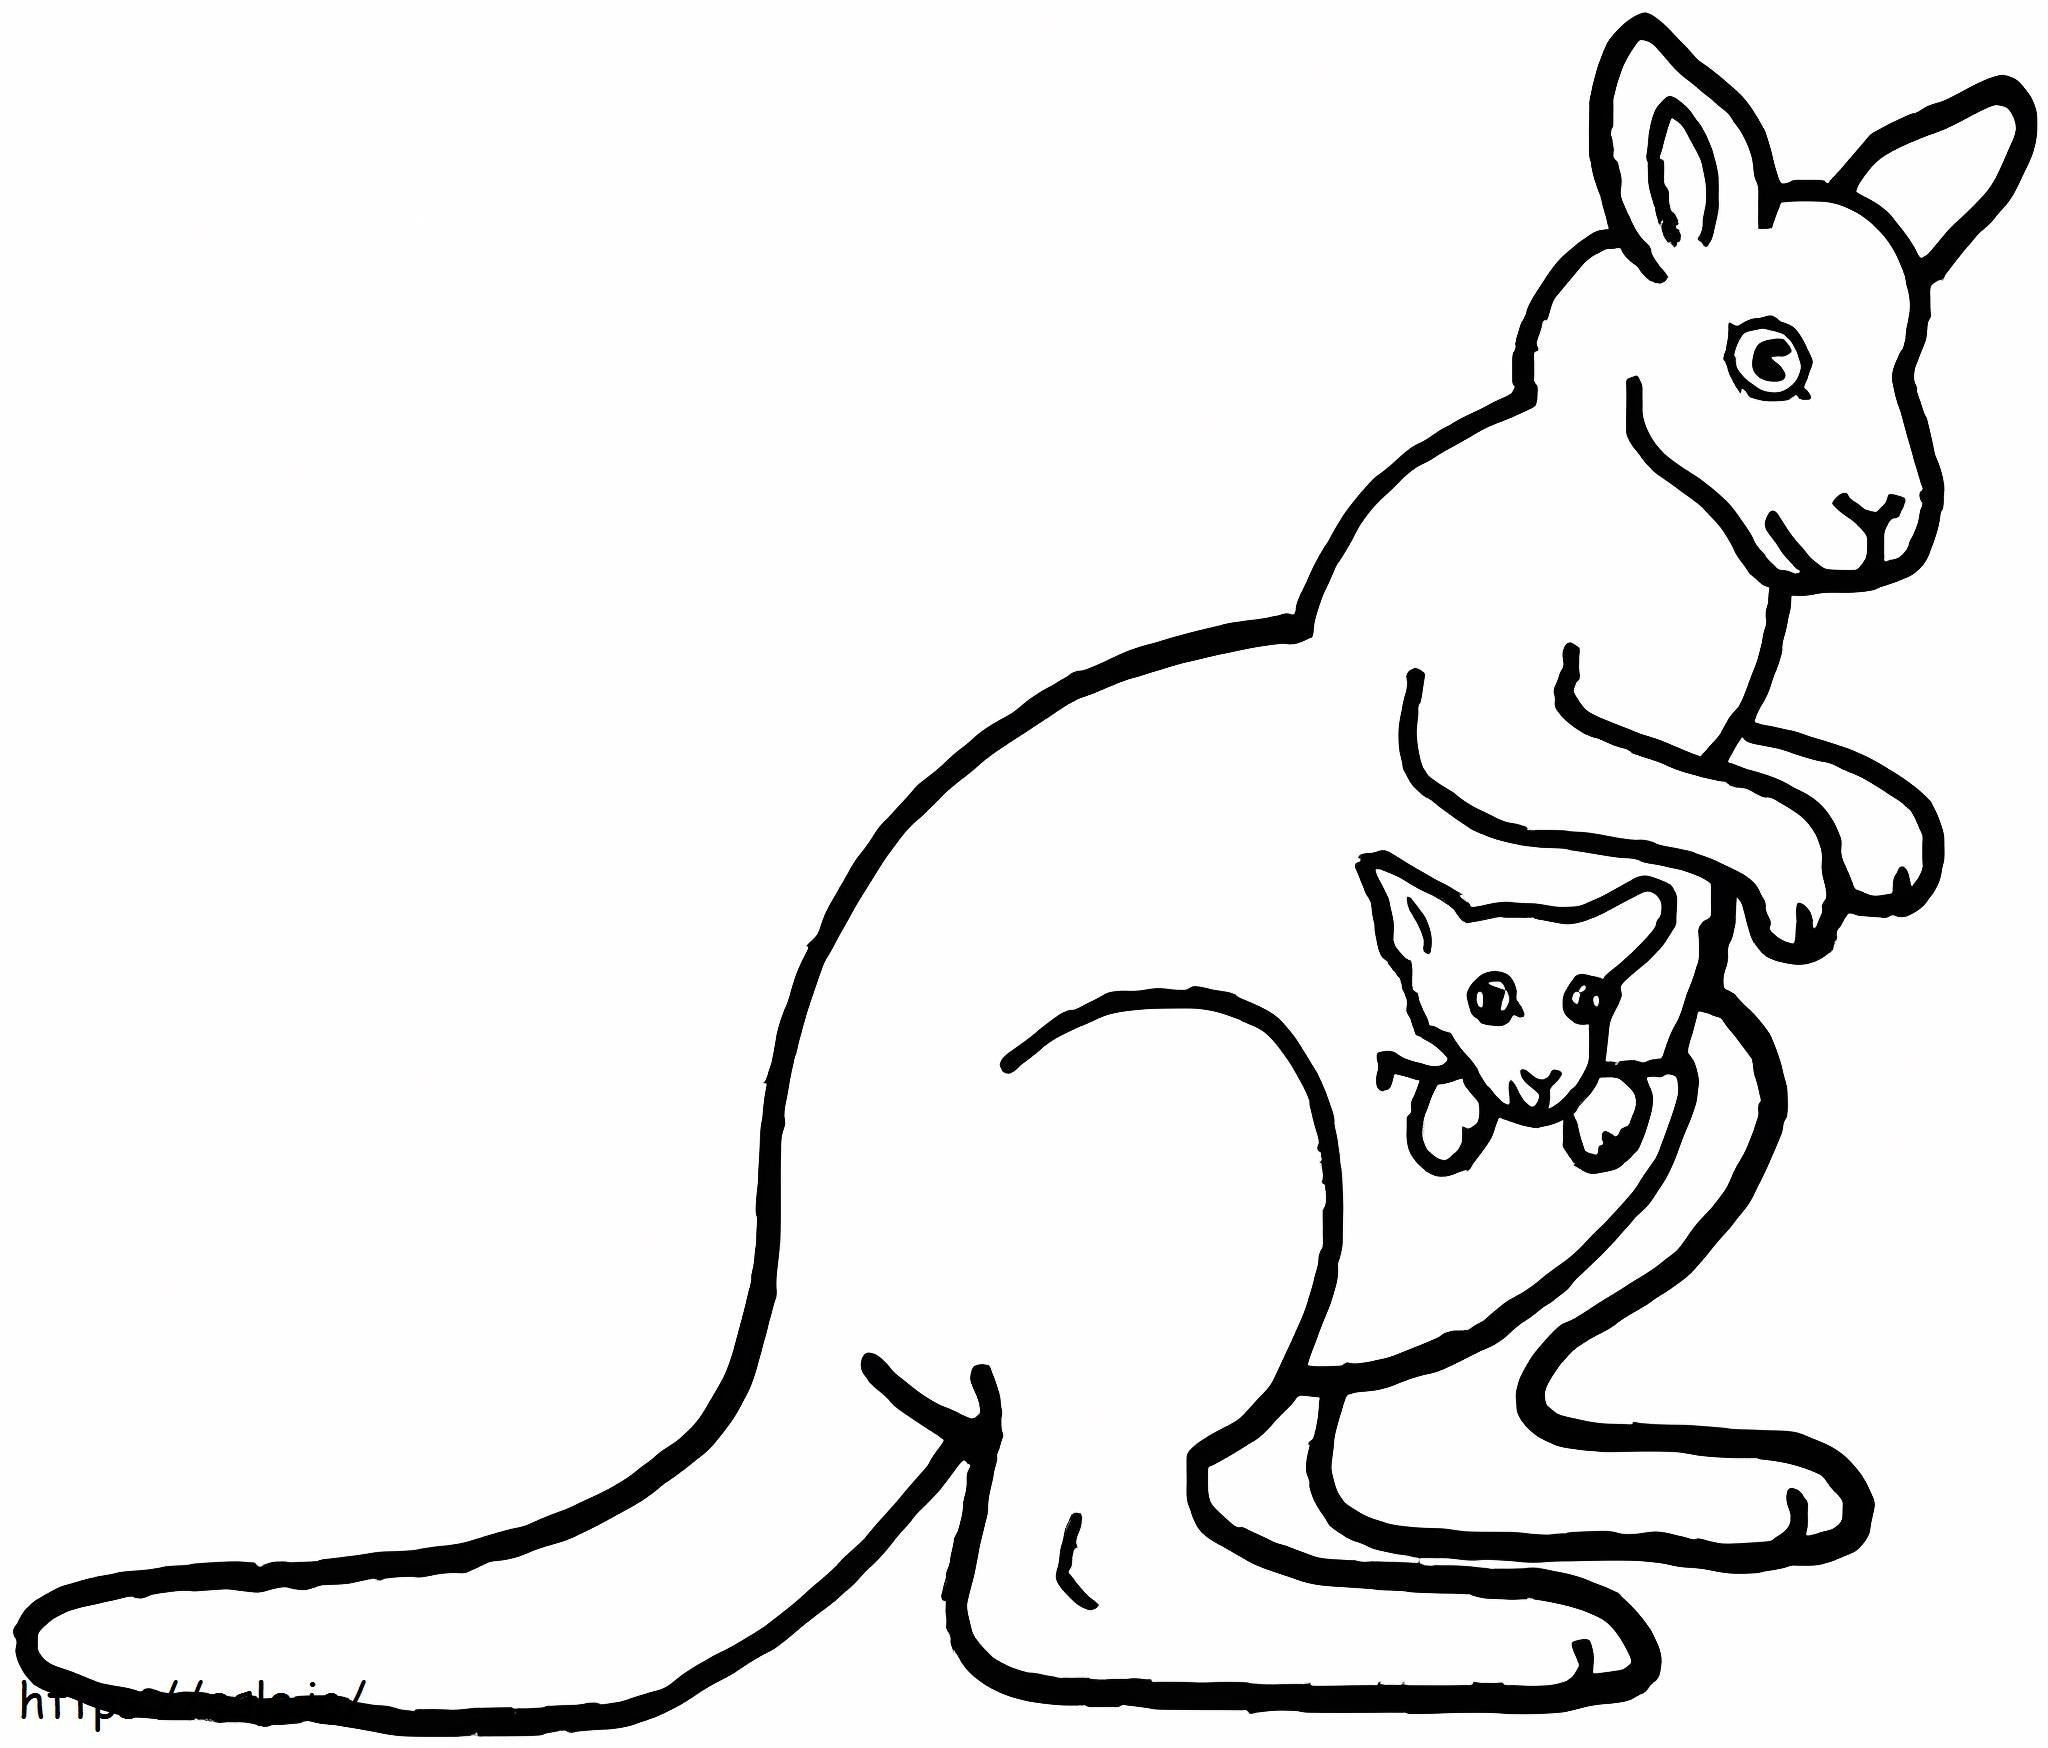 Printable Mother And Baby Kangaroo coloring page